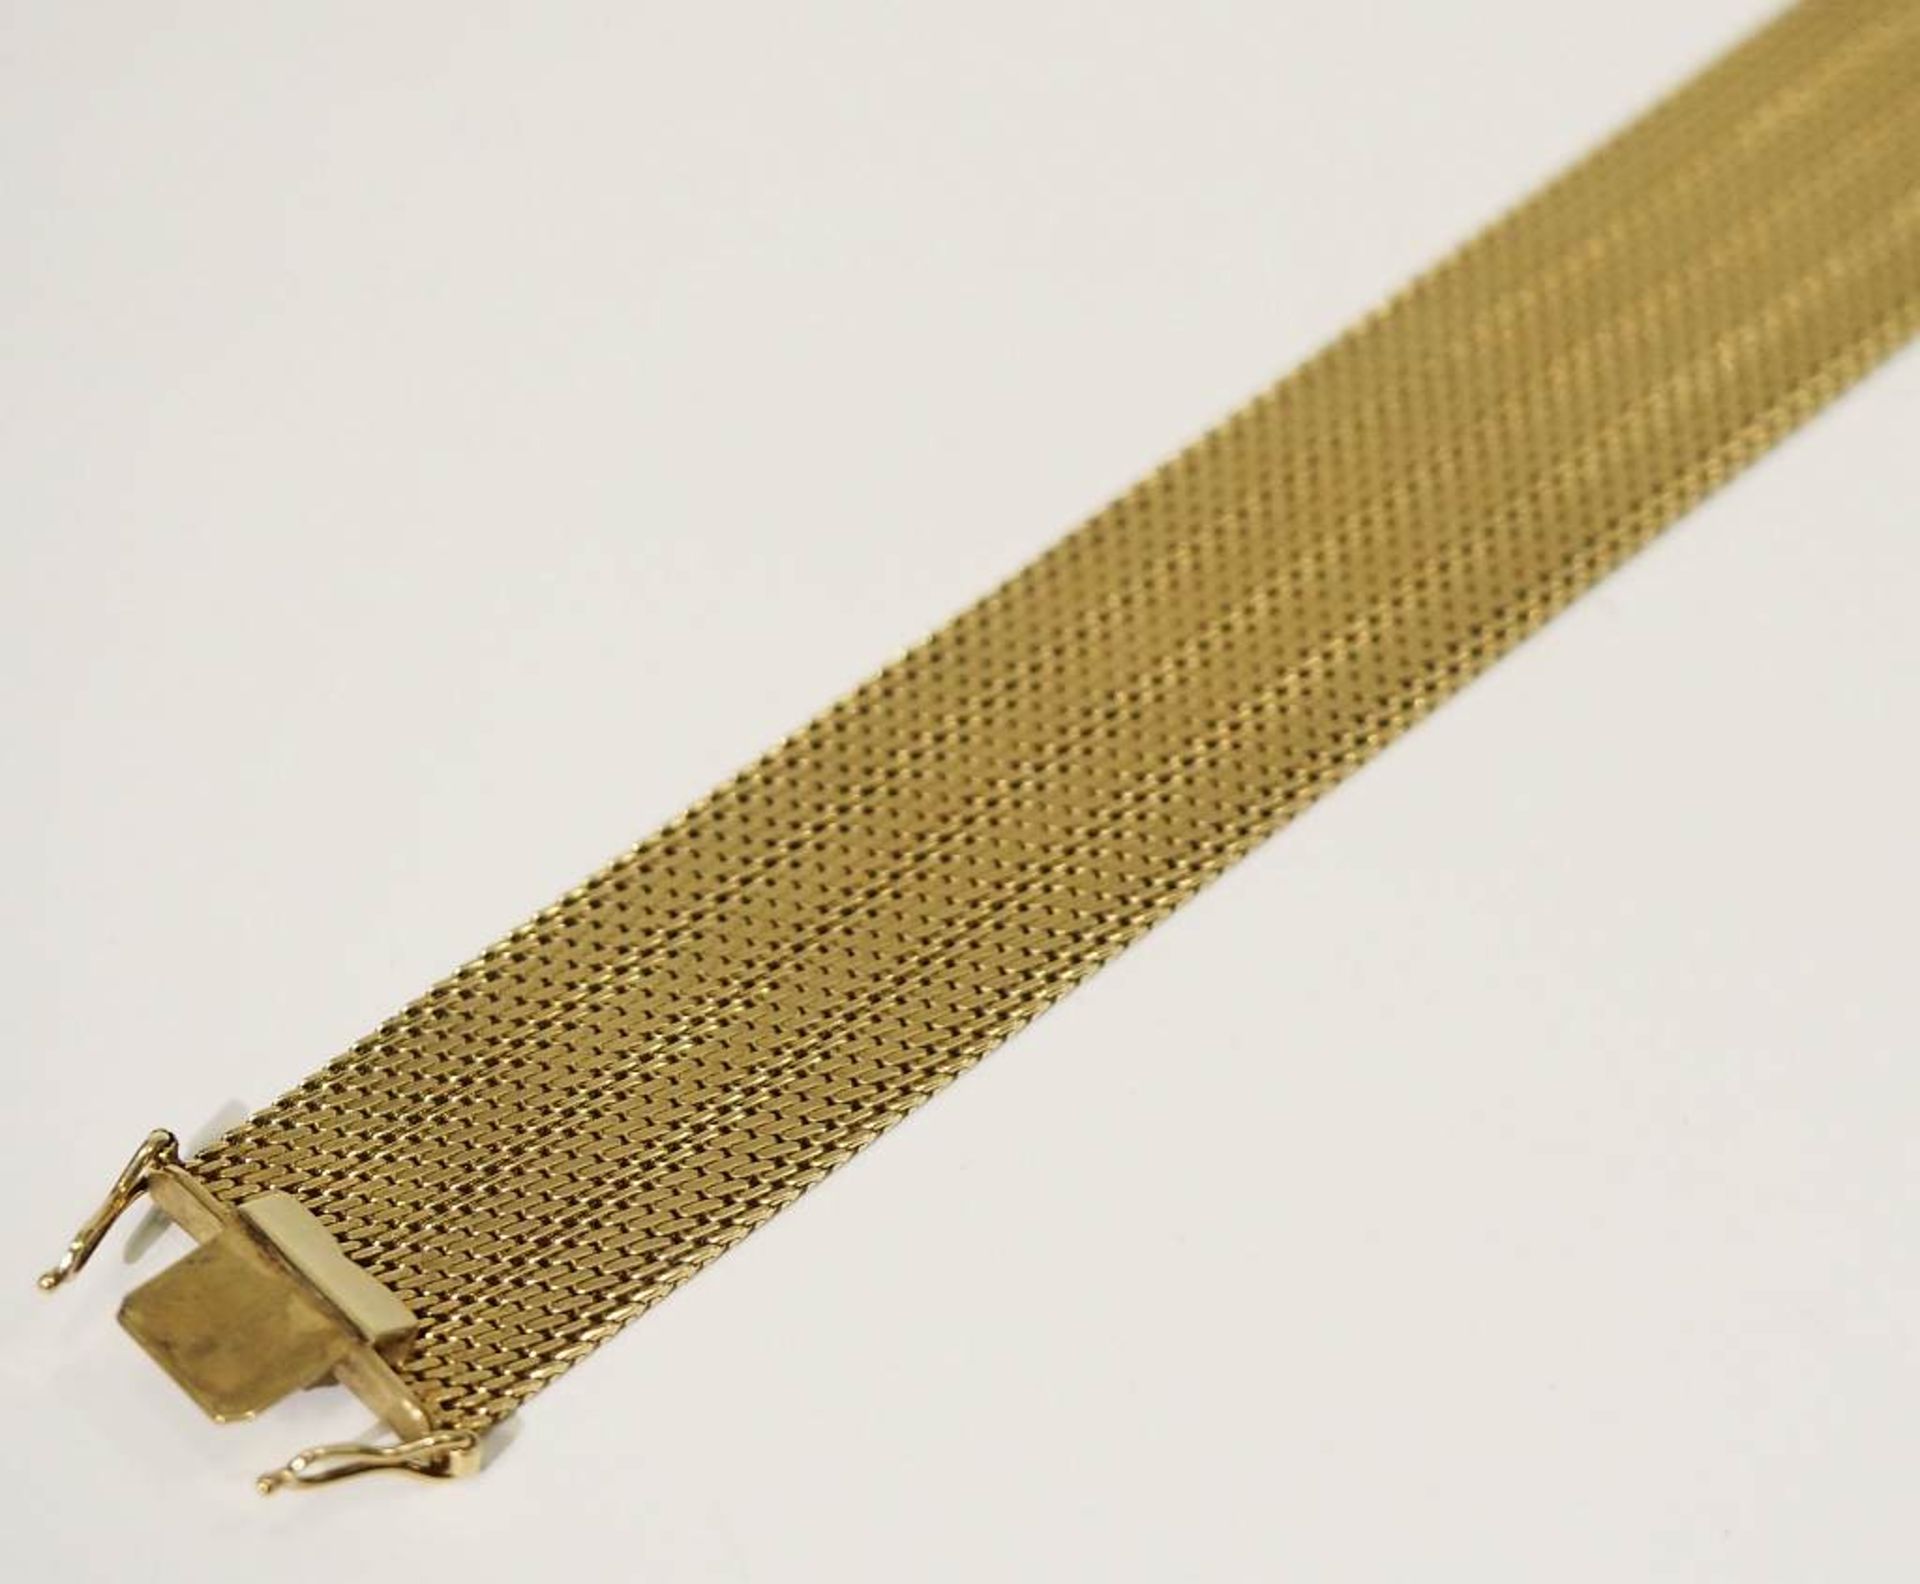 Armband.Armband. 585er Gelbgold punziert. Breites Armband mit ziselierten und polierten Reihen, - Image 4 of 5